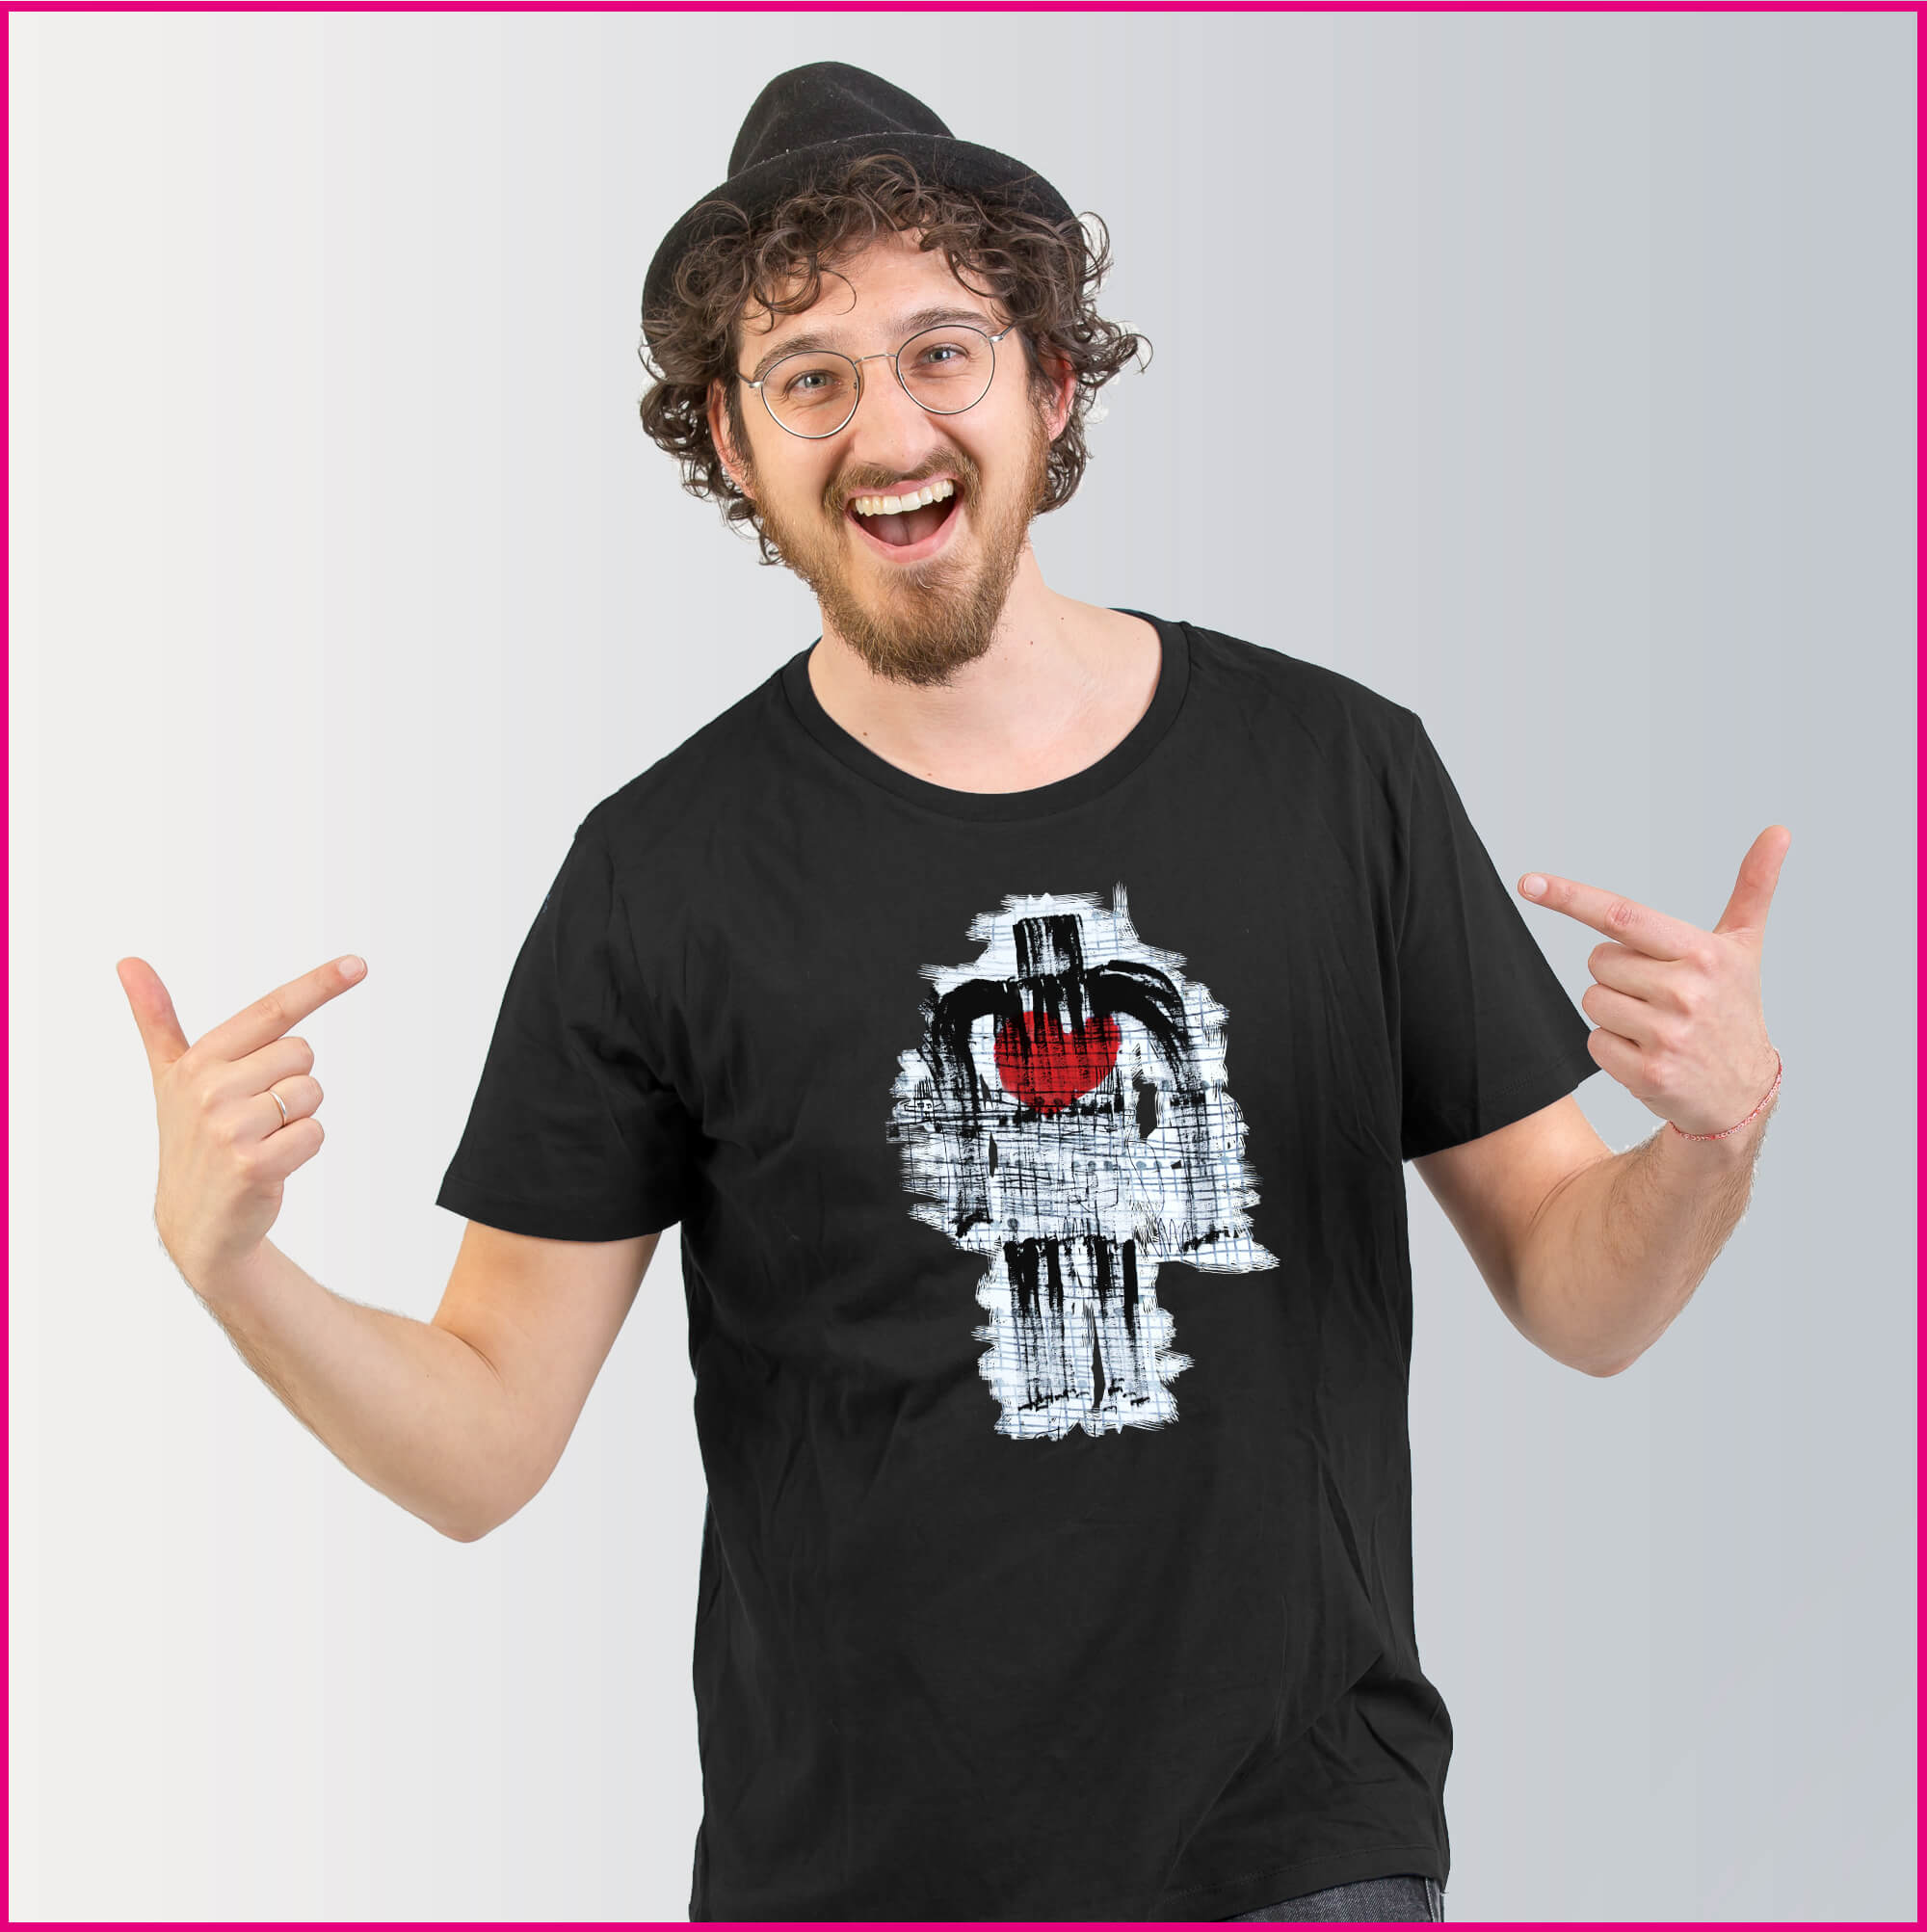 Produktfoto Männer T-Shirt mit dem Motiv Man with heart von Heinz Etzelt